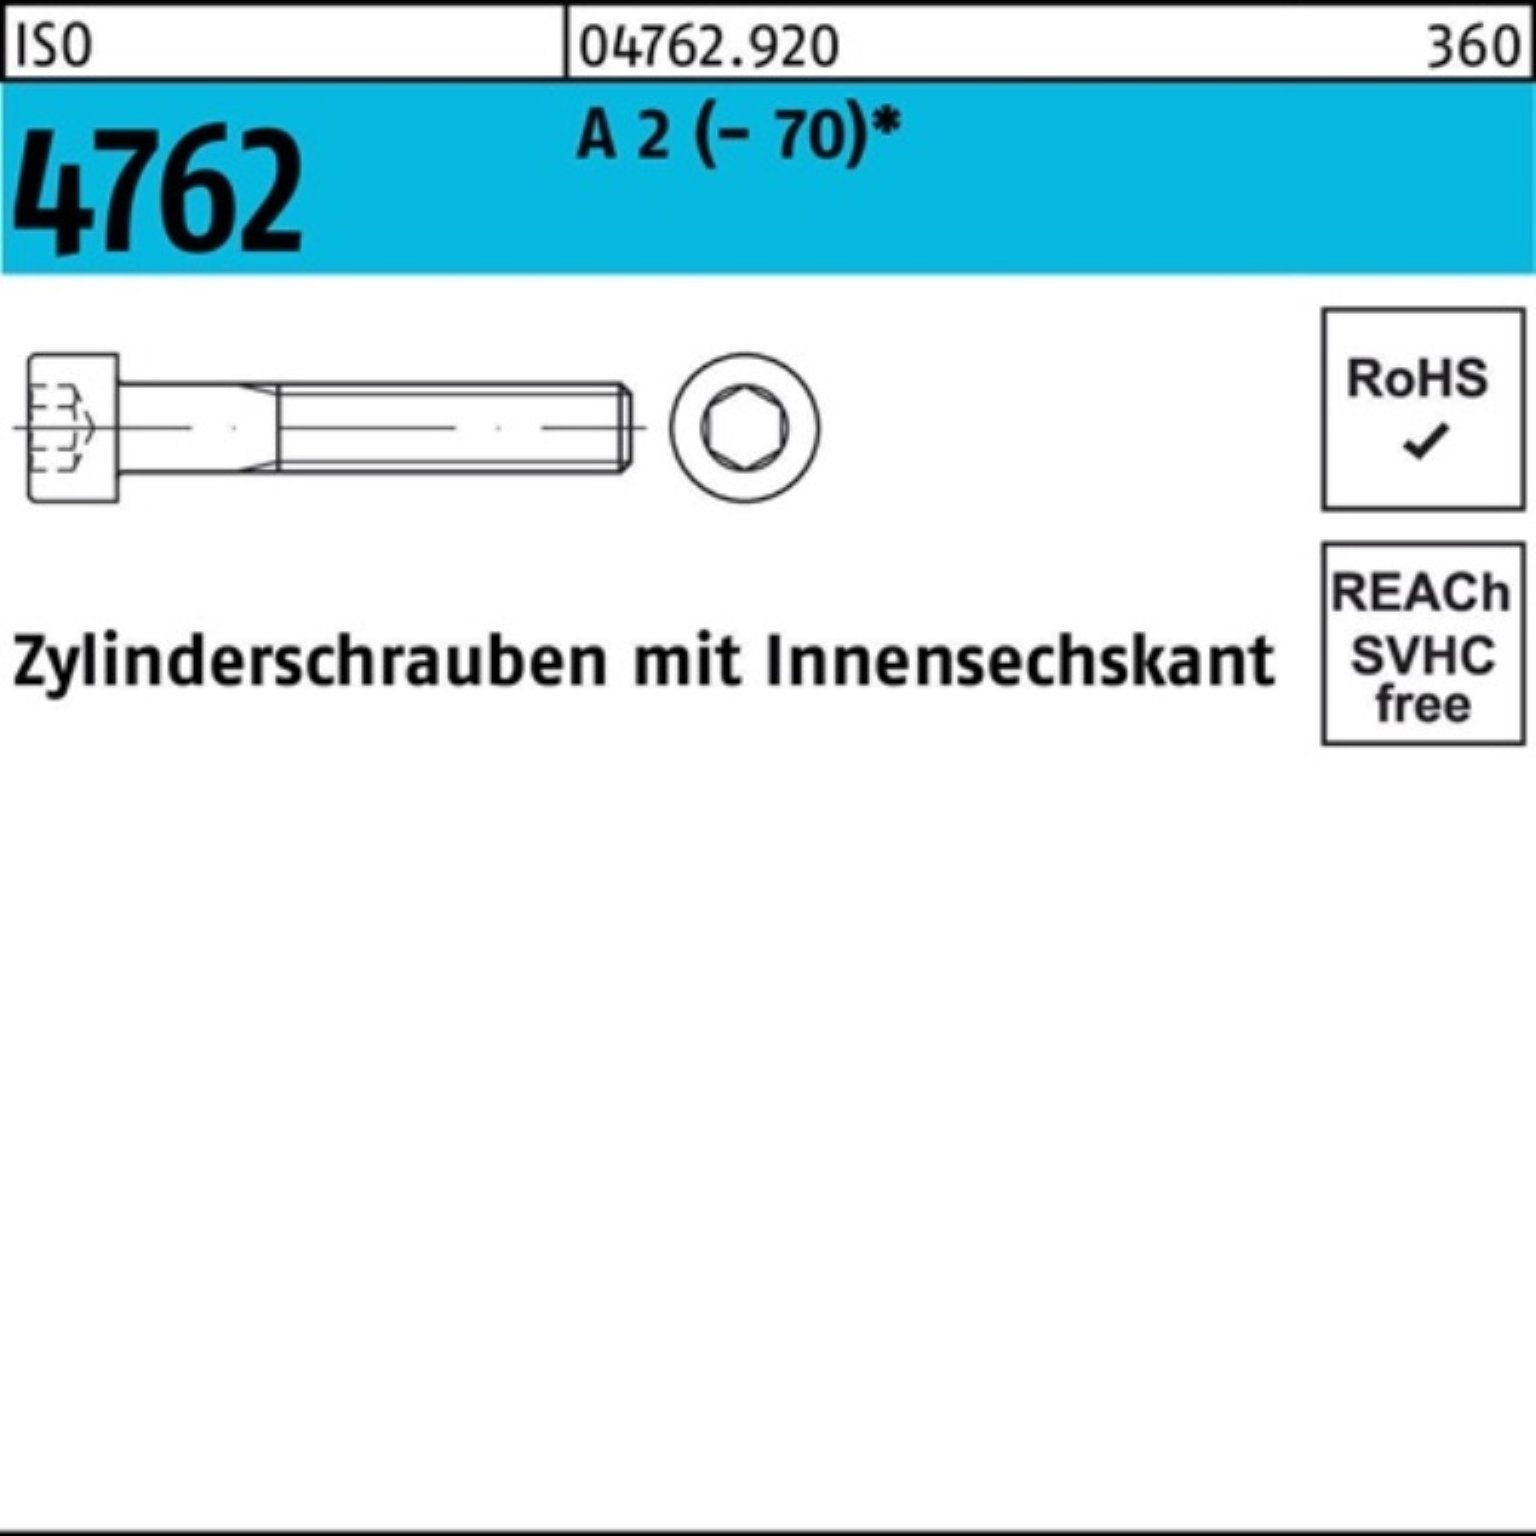 Reyher Zylinderschraube 100er Pack Zylinderschraube Stück Innen-6kt I 1 4762 ISO M24x 170 2 A